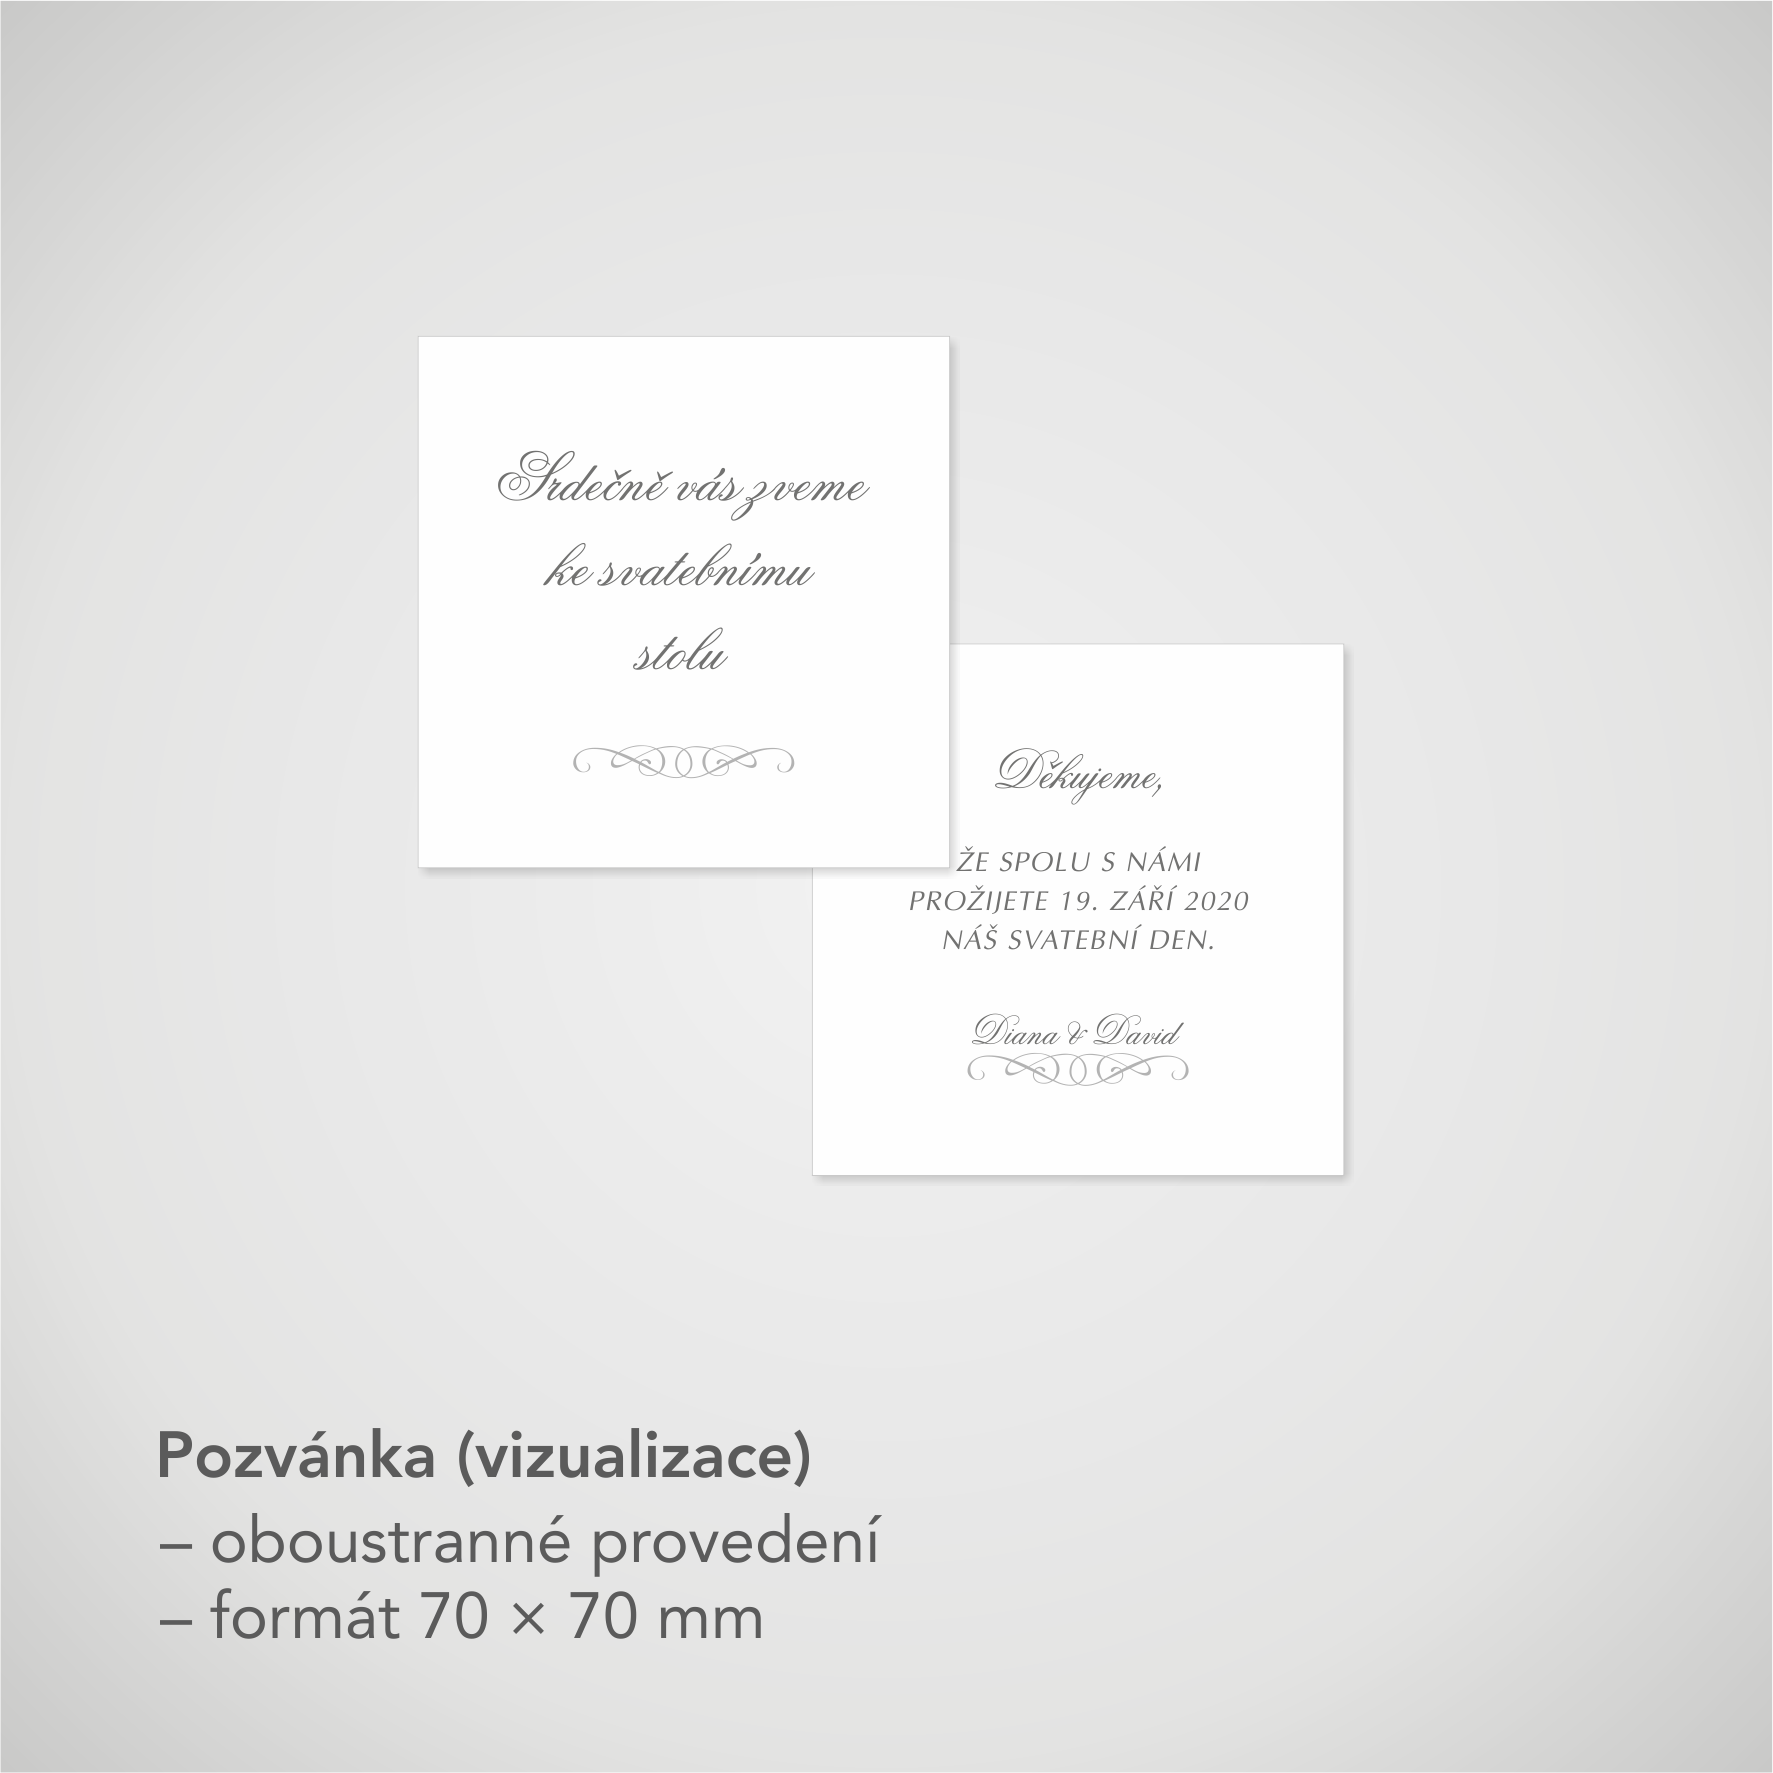 Pozvánka, informační karta – bílá perleť, čtvercová 70 × 70 mm, oboustranná